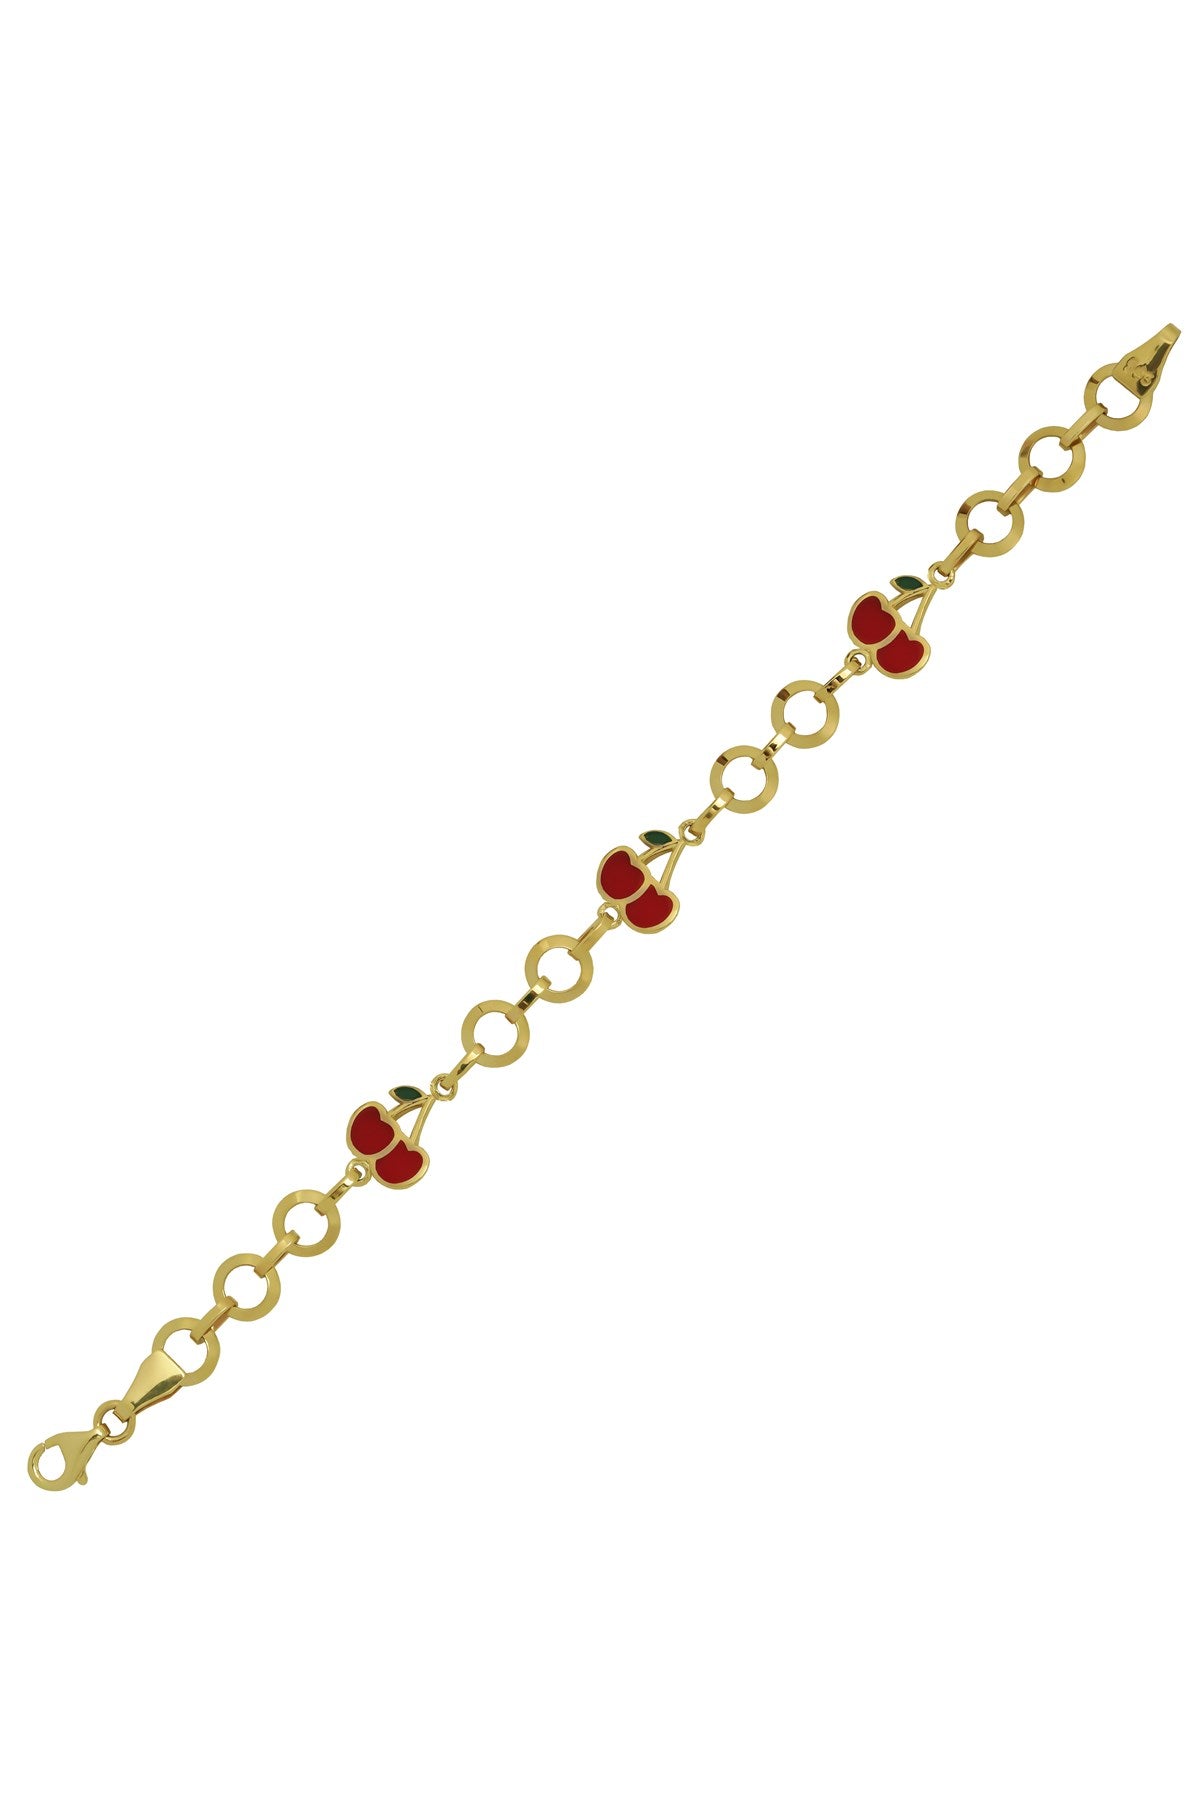 Pulsera de bebé y niños con cadena de anillo de oro macizo | 14K (585) | 3,55 gramos